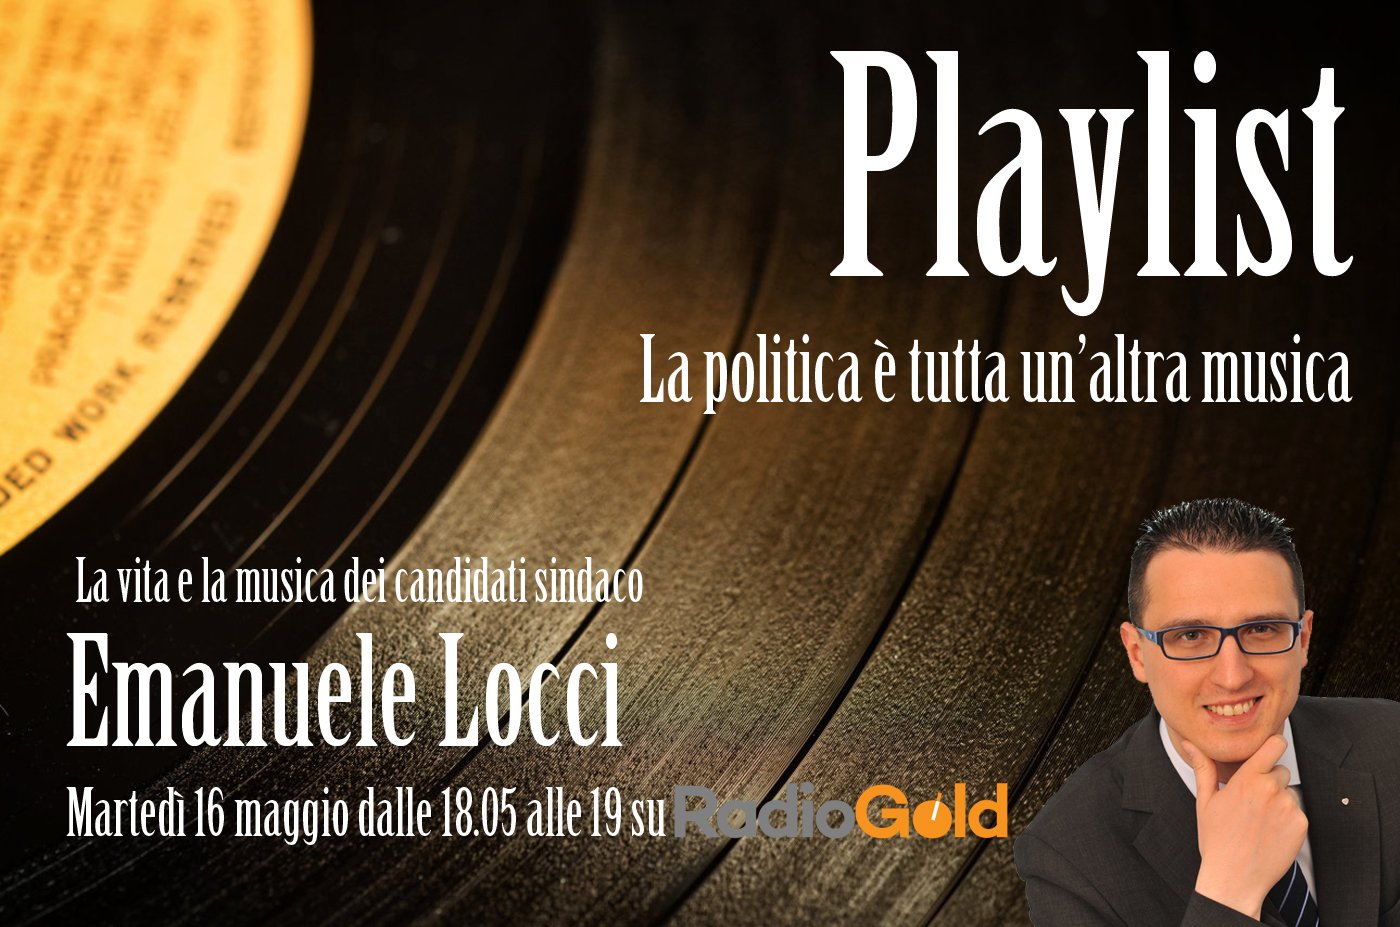 La “Playlist” per conoscere Emanuele Locci